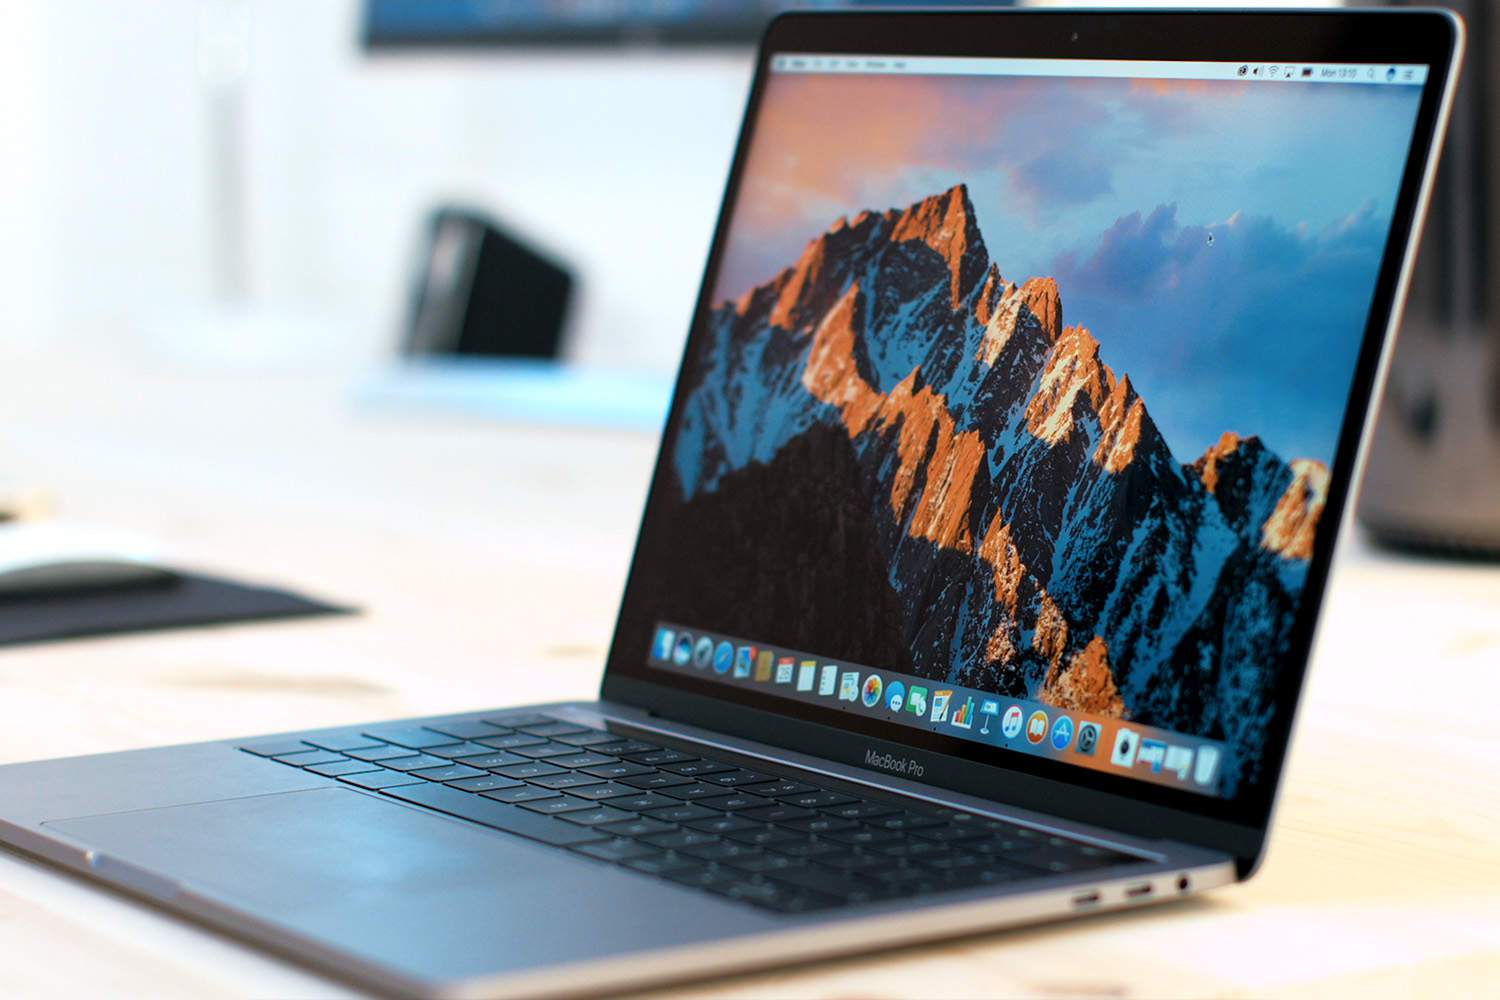 MacBook Pro получит 6-ядерный процессор Intel Core i7-8750H